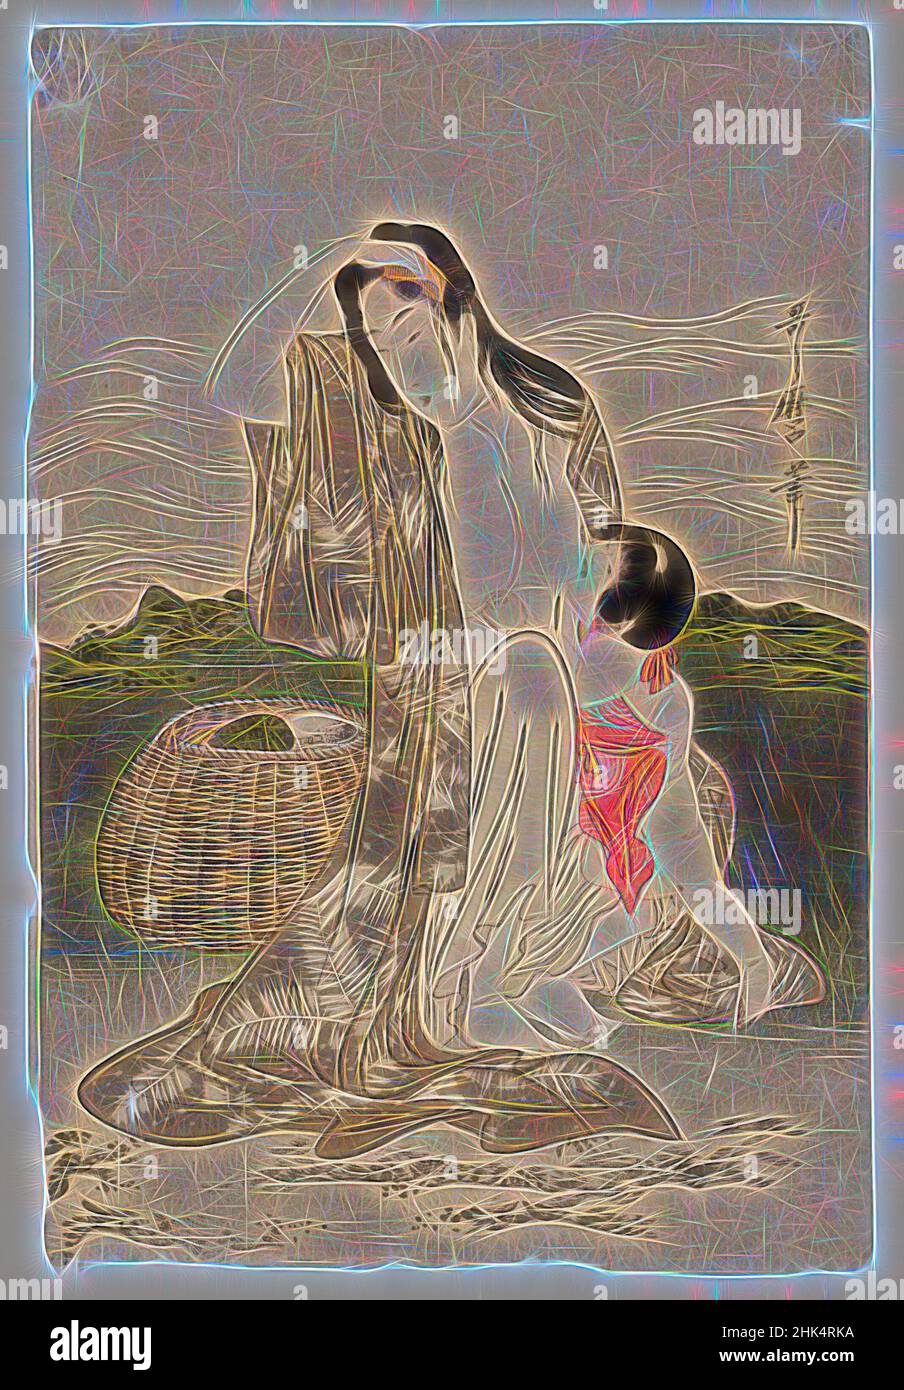 Inspiriert von Abalone Divers, Kitagawa Utamaro, japanisch, 1753-1806, Farbholzschnitt auf Papier, Japan, ca. 1797-1798, Edo-Periode, 14 1/2 x 9 3/4 Zoll, 36,8 x 24,8 cm, Korb, Stillen, Kamm, intim, Mutter und Kind, Menschen, neu erfunden von Artotop. Klassische Kunst neu erfunden mit einem modernen Twist. Design von warmen fröhlichen Leuchten der Helligkeit und Lichtstrahl Strahlkraft. Fotografie inspiriert von Surrealismus und Futurismus, umarmt dynamische Energie der modernen Technologie, Bewegung, Geschwindigkeit und Kultur zu revolutionieren Stockfoto